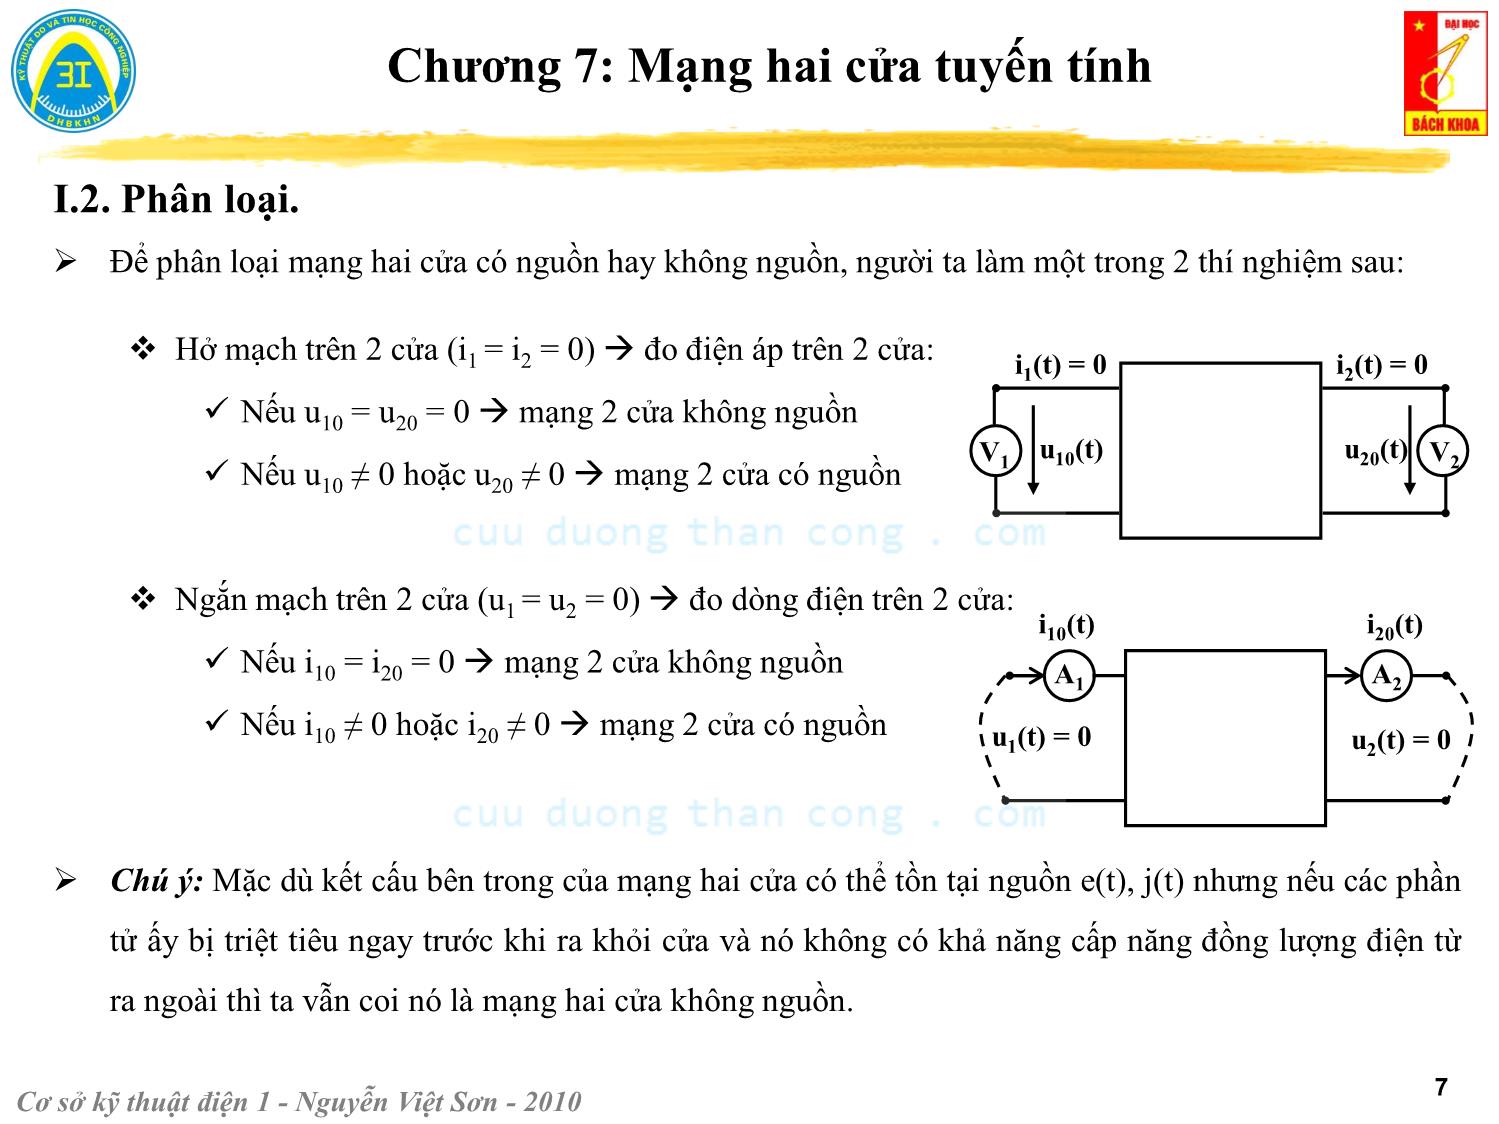 Bài giảng Kỹ thuật điện 1 - Chương 7: Mạng hai cửa tuyến tính - Nguyễn Việt Sơn trang 7